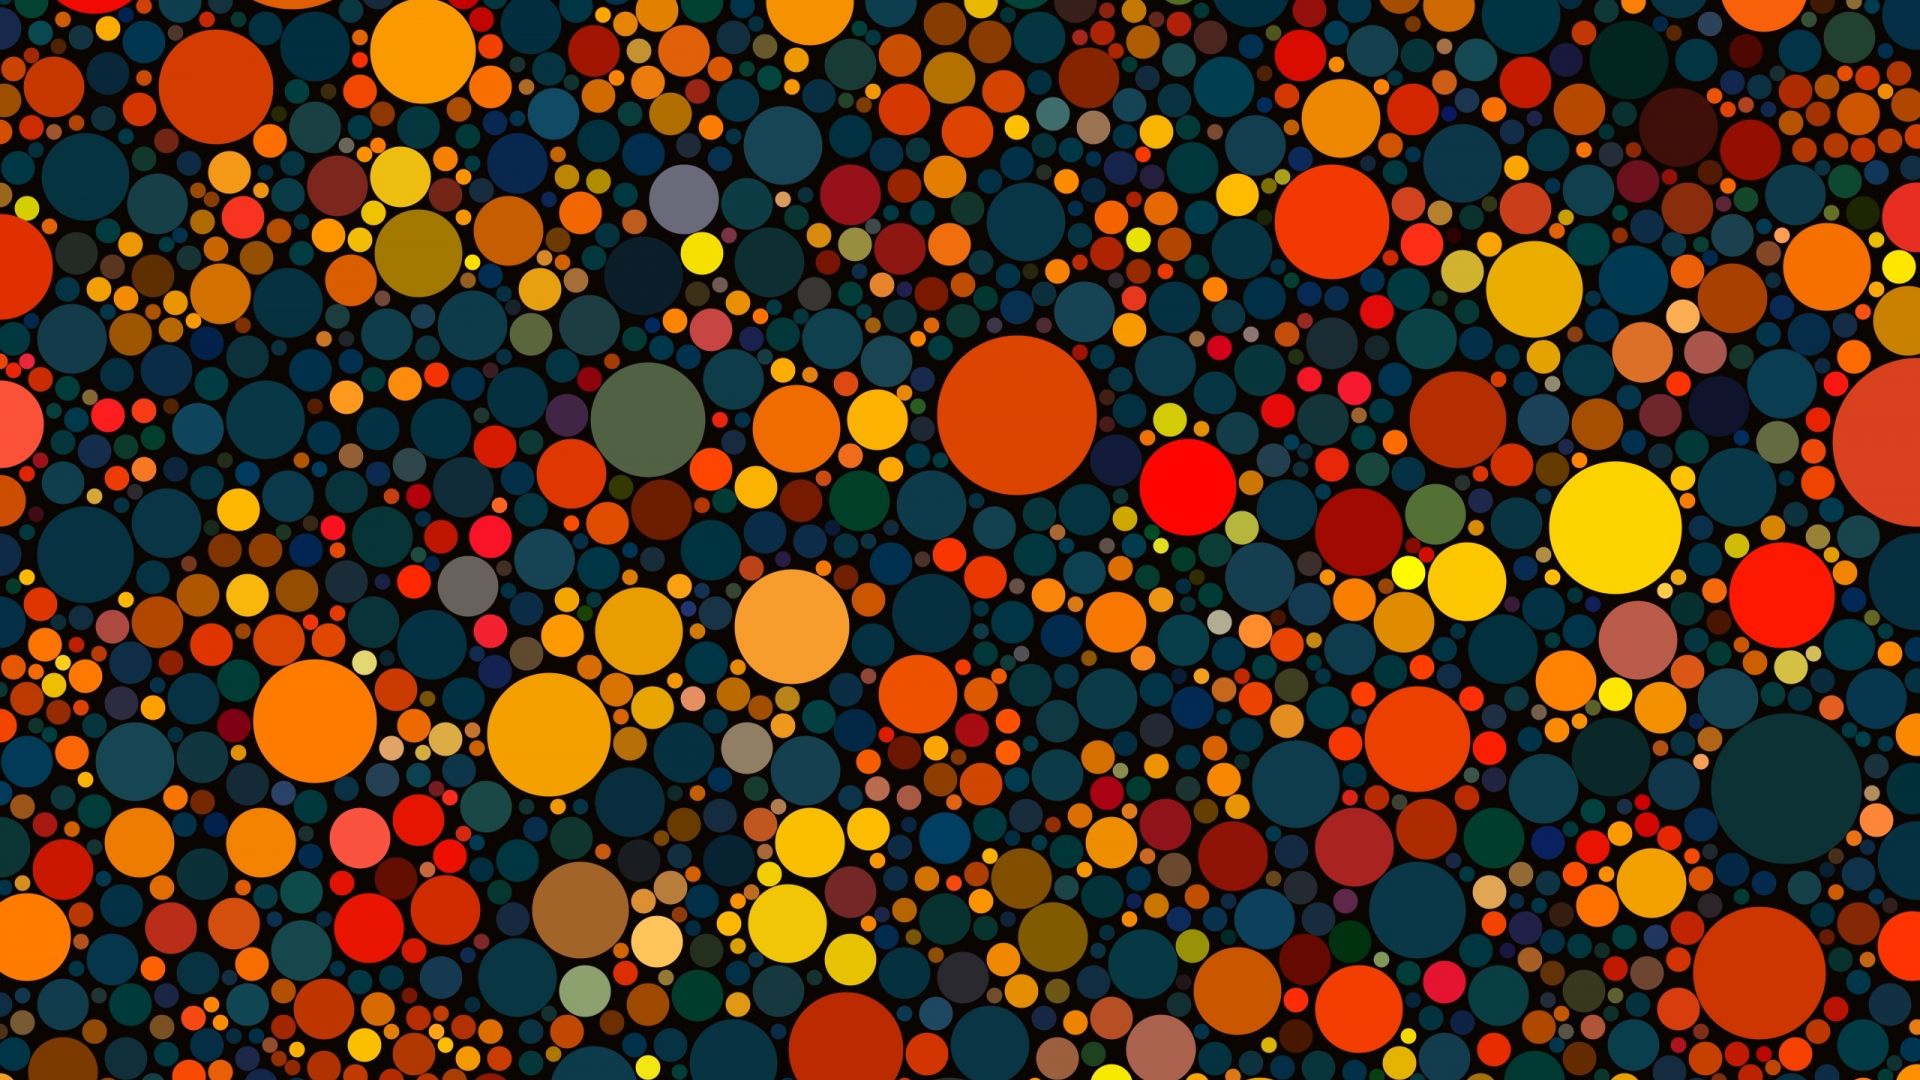 Wallpaper Colorful, circles, big small circles, abstract